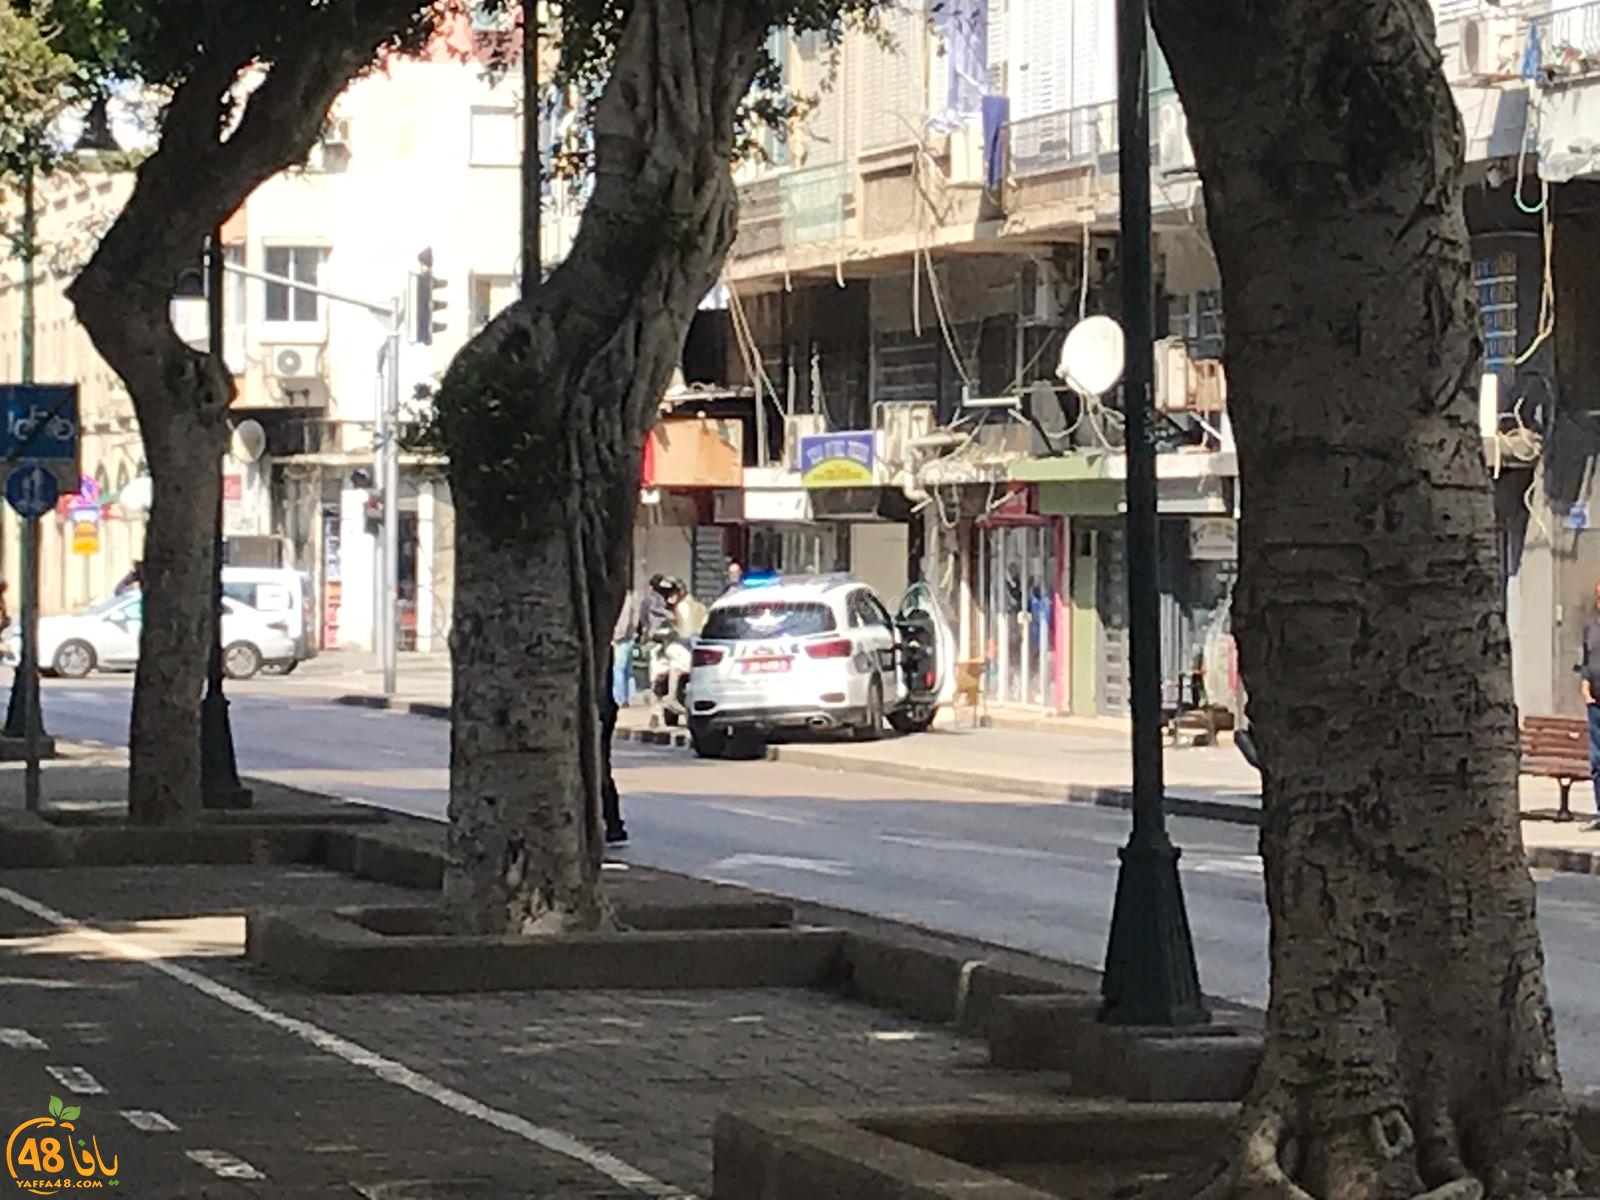  يافا: الشرطة تُغلق شارع شديروت يروشلايم لمعالجة جسم مشبوه 